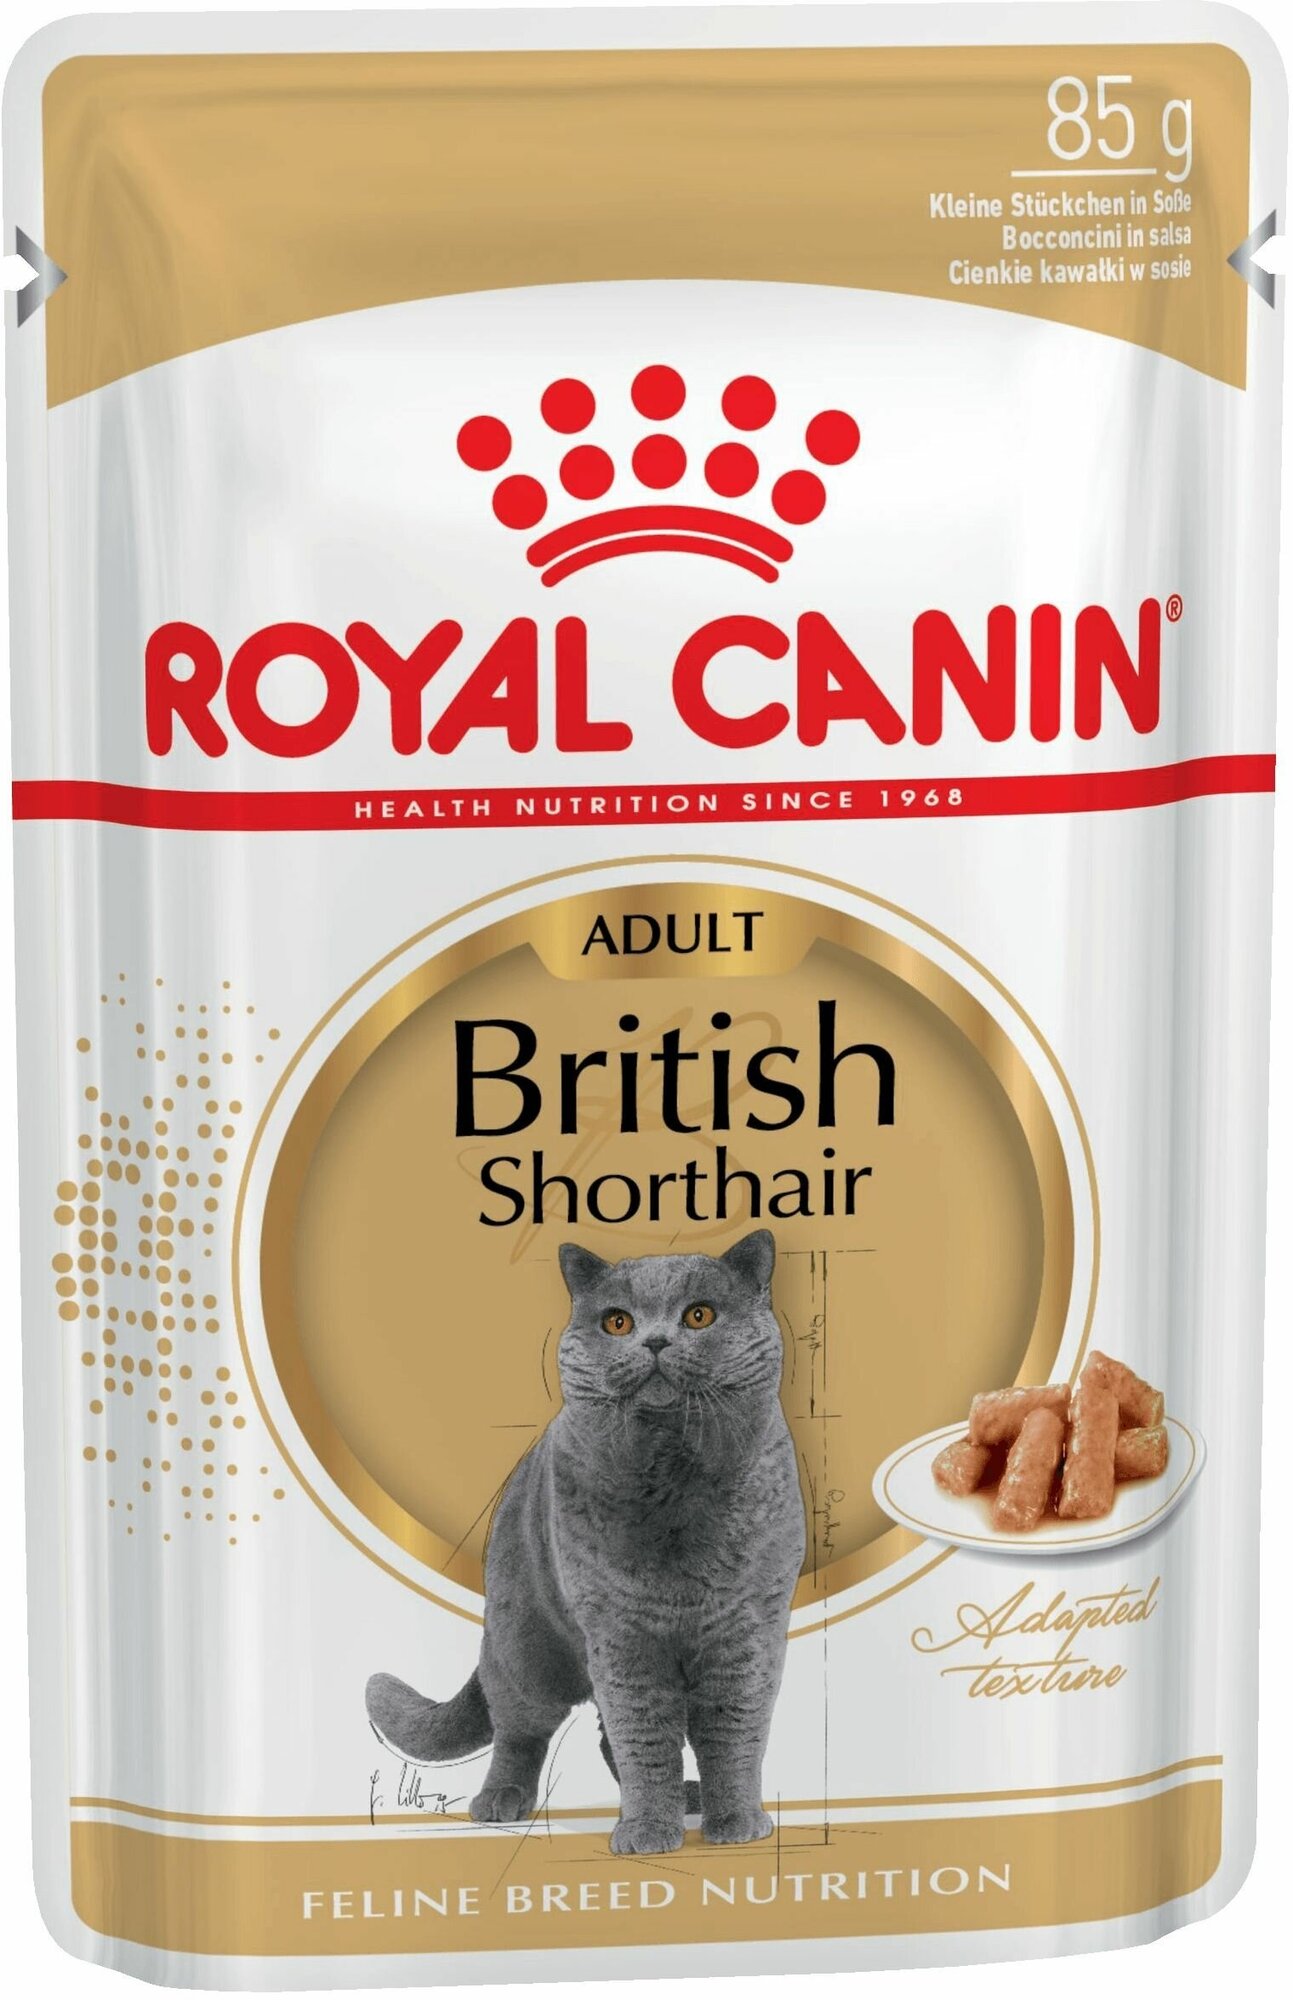 Royal Canin Упаковка 28шт. Паучи Кусочки в соусе для Британской Короткошерстной кошки старше 12 месяцев British Shorthair, 85г*28 2.38 кг